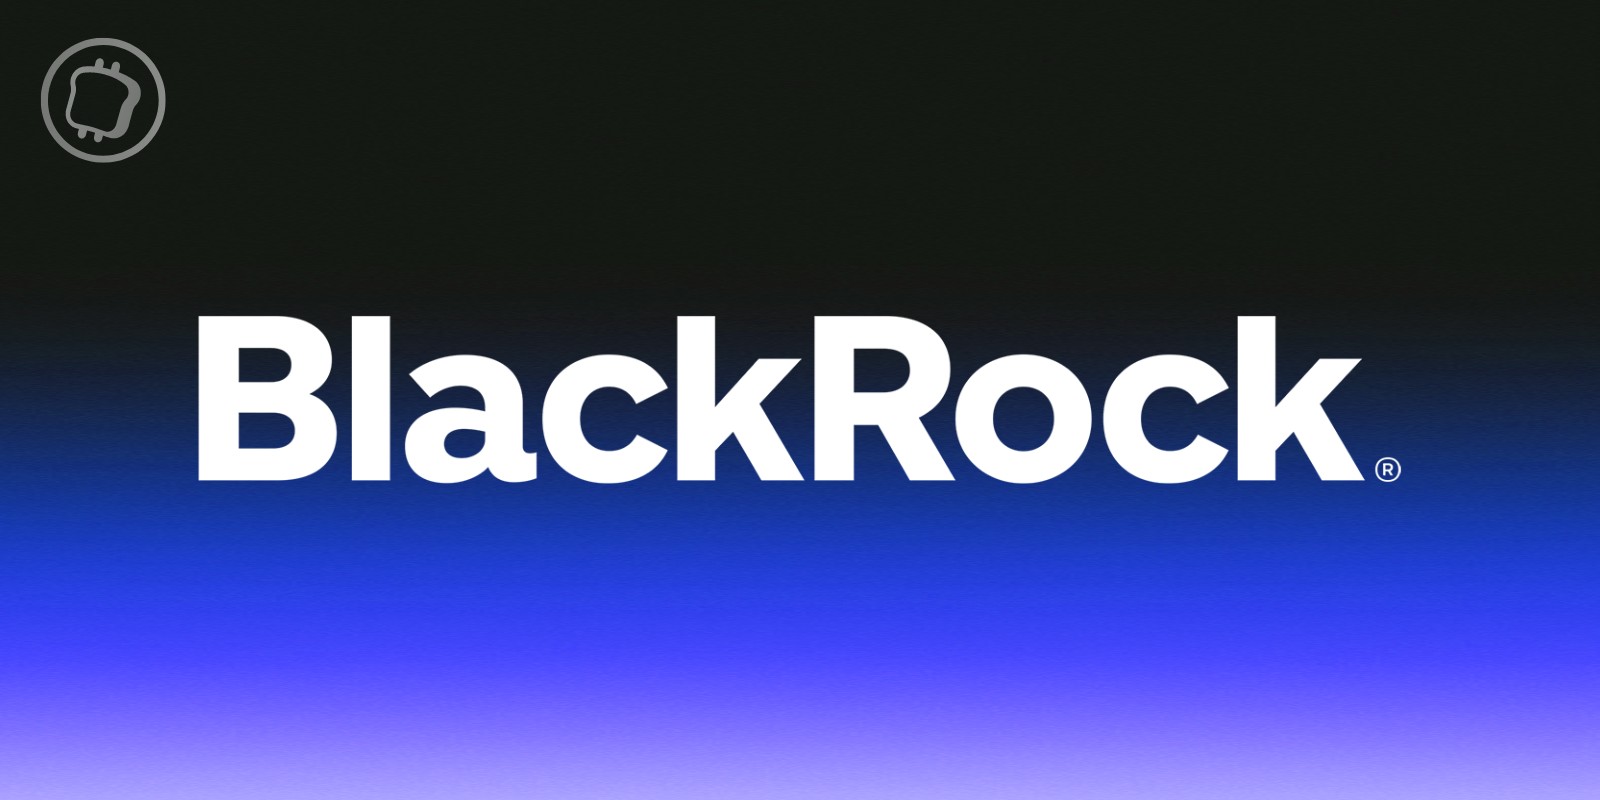 L'ETF Bitcoin spot de BlackRock enregistre la 10e meilleure performance de l'histoire des ETF